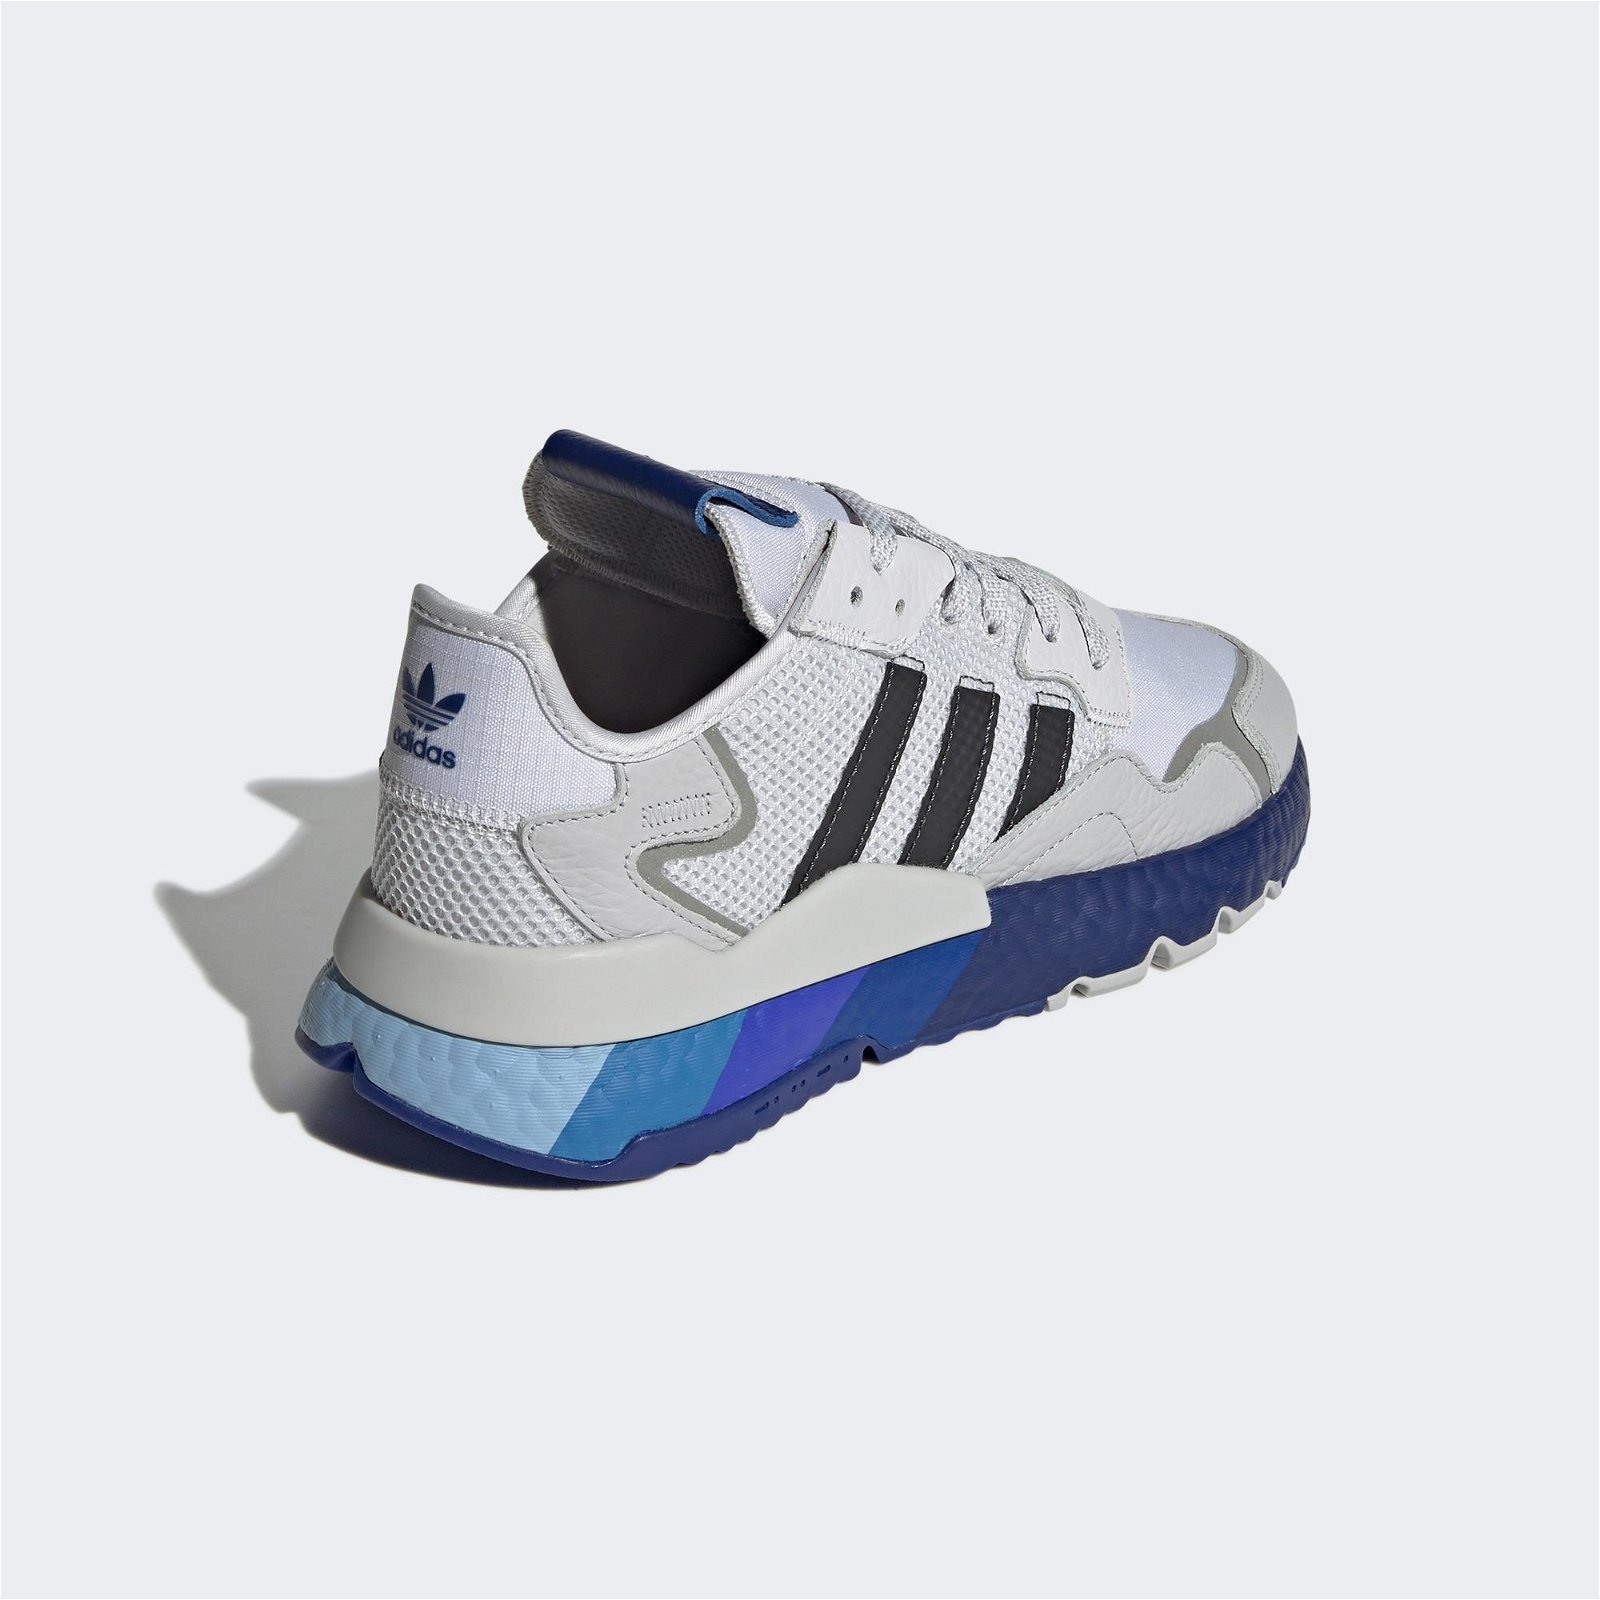 adidas Nite Jogger Erkek Gri/Mavi Spor Ayakkabı